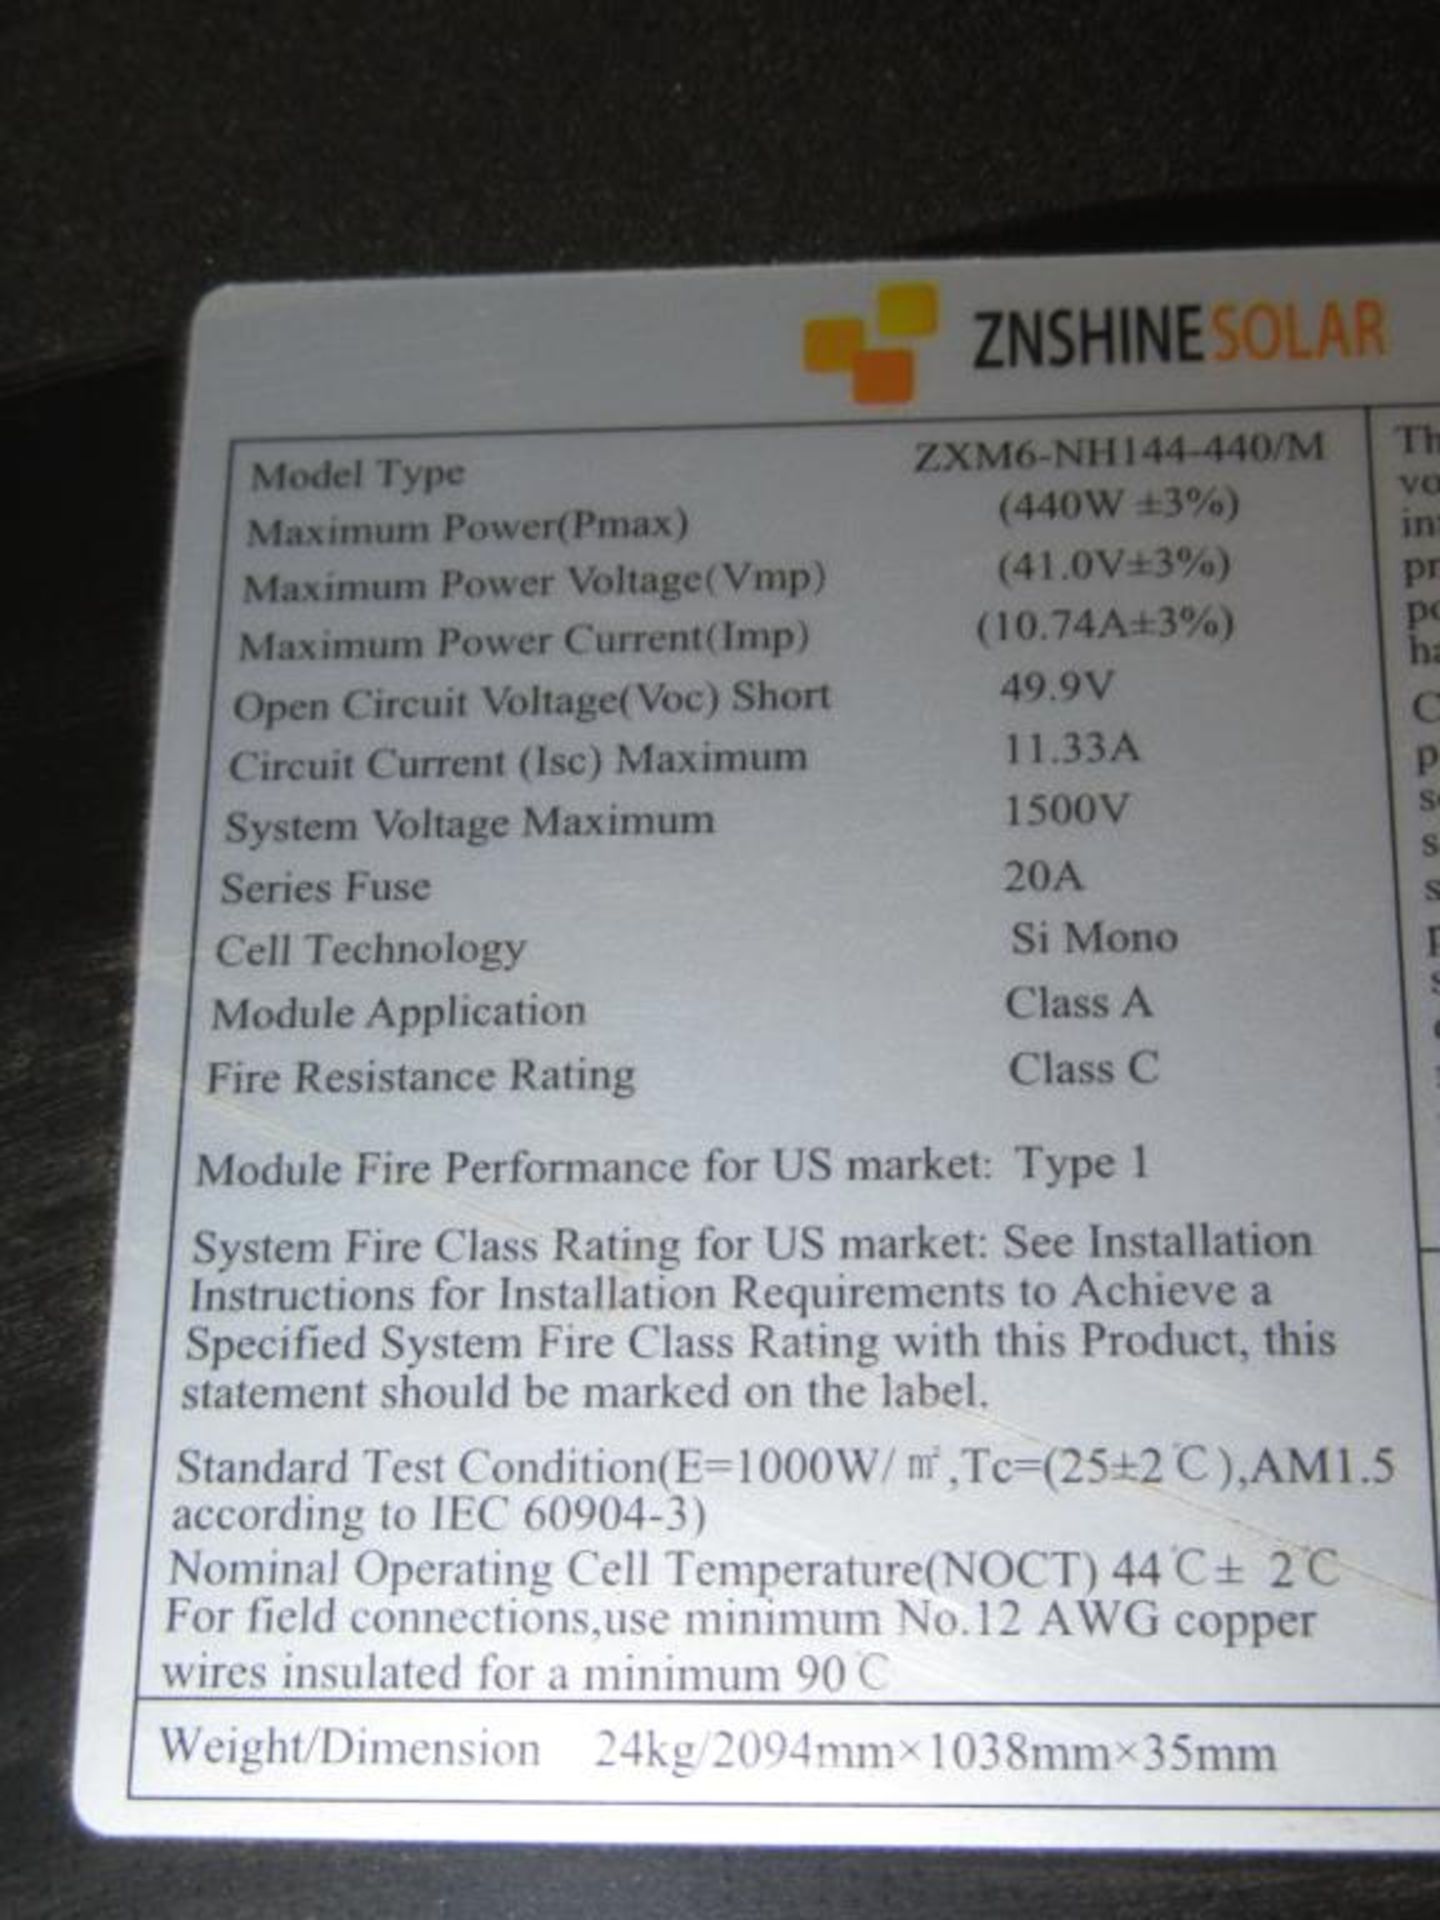 ZNShine Solar Panels - Image 5 of 5